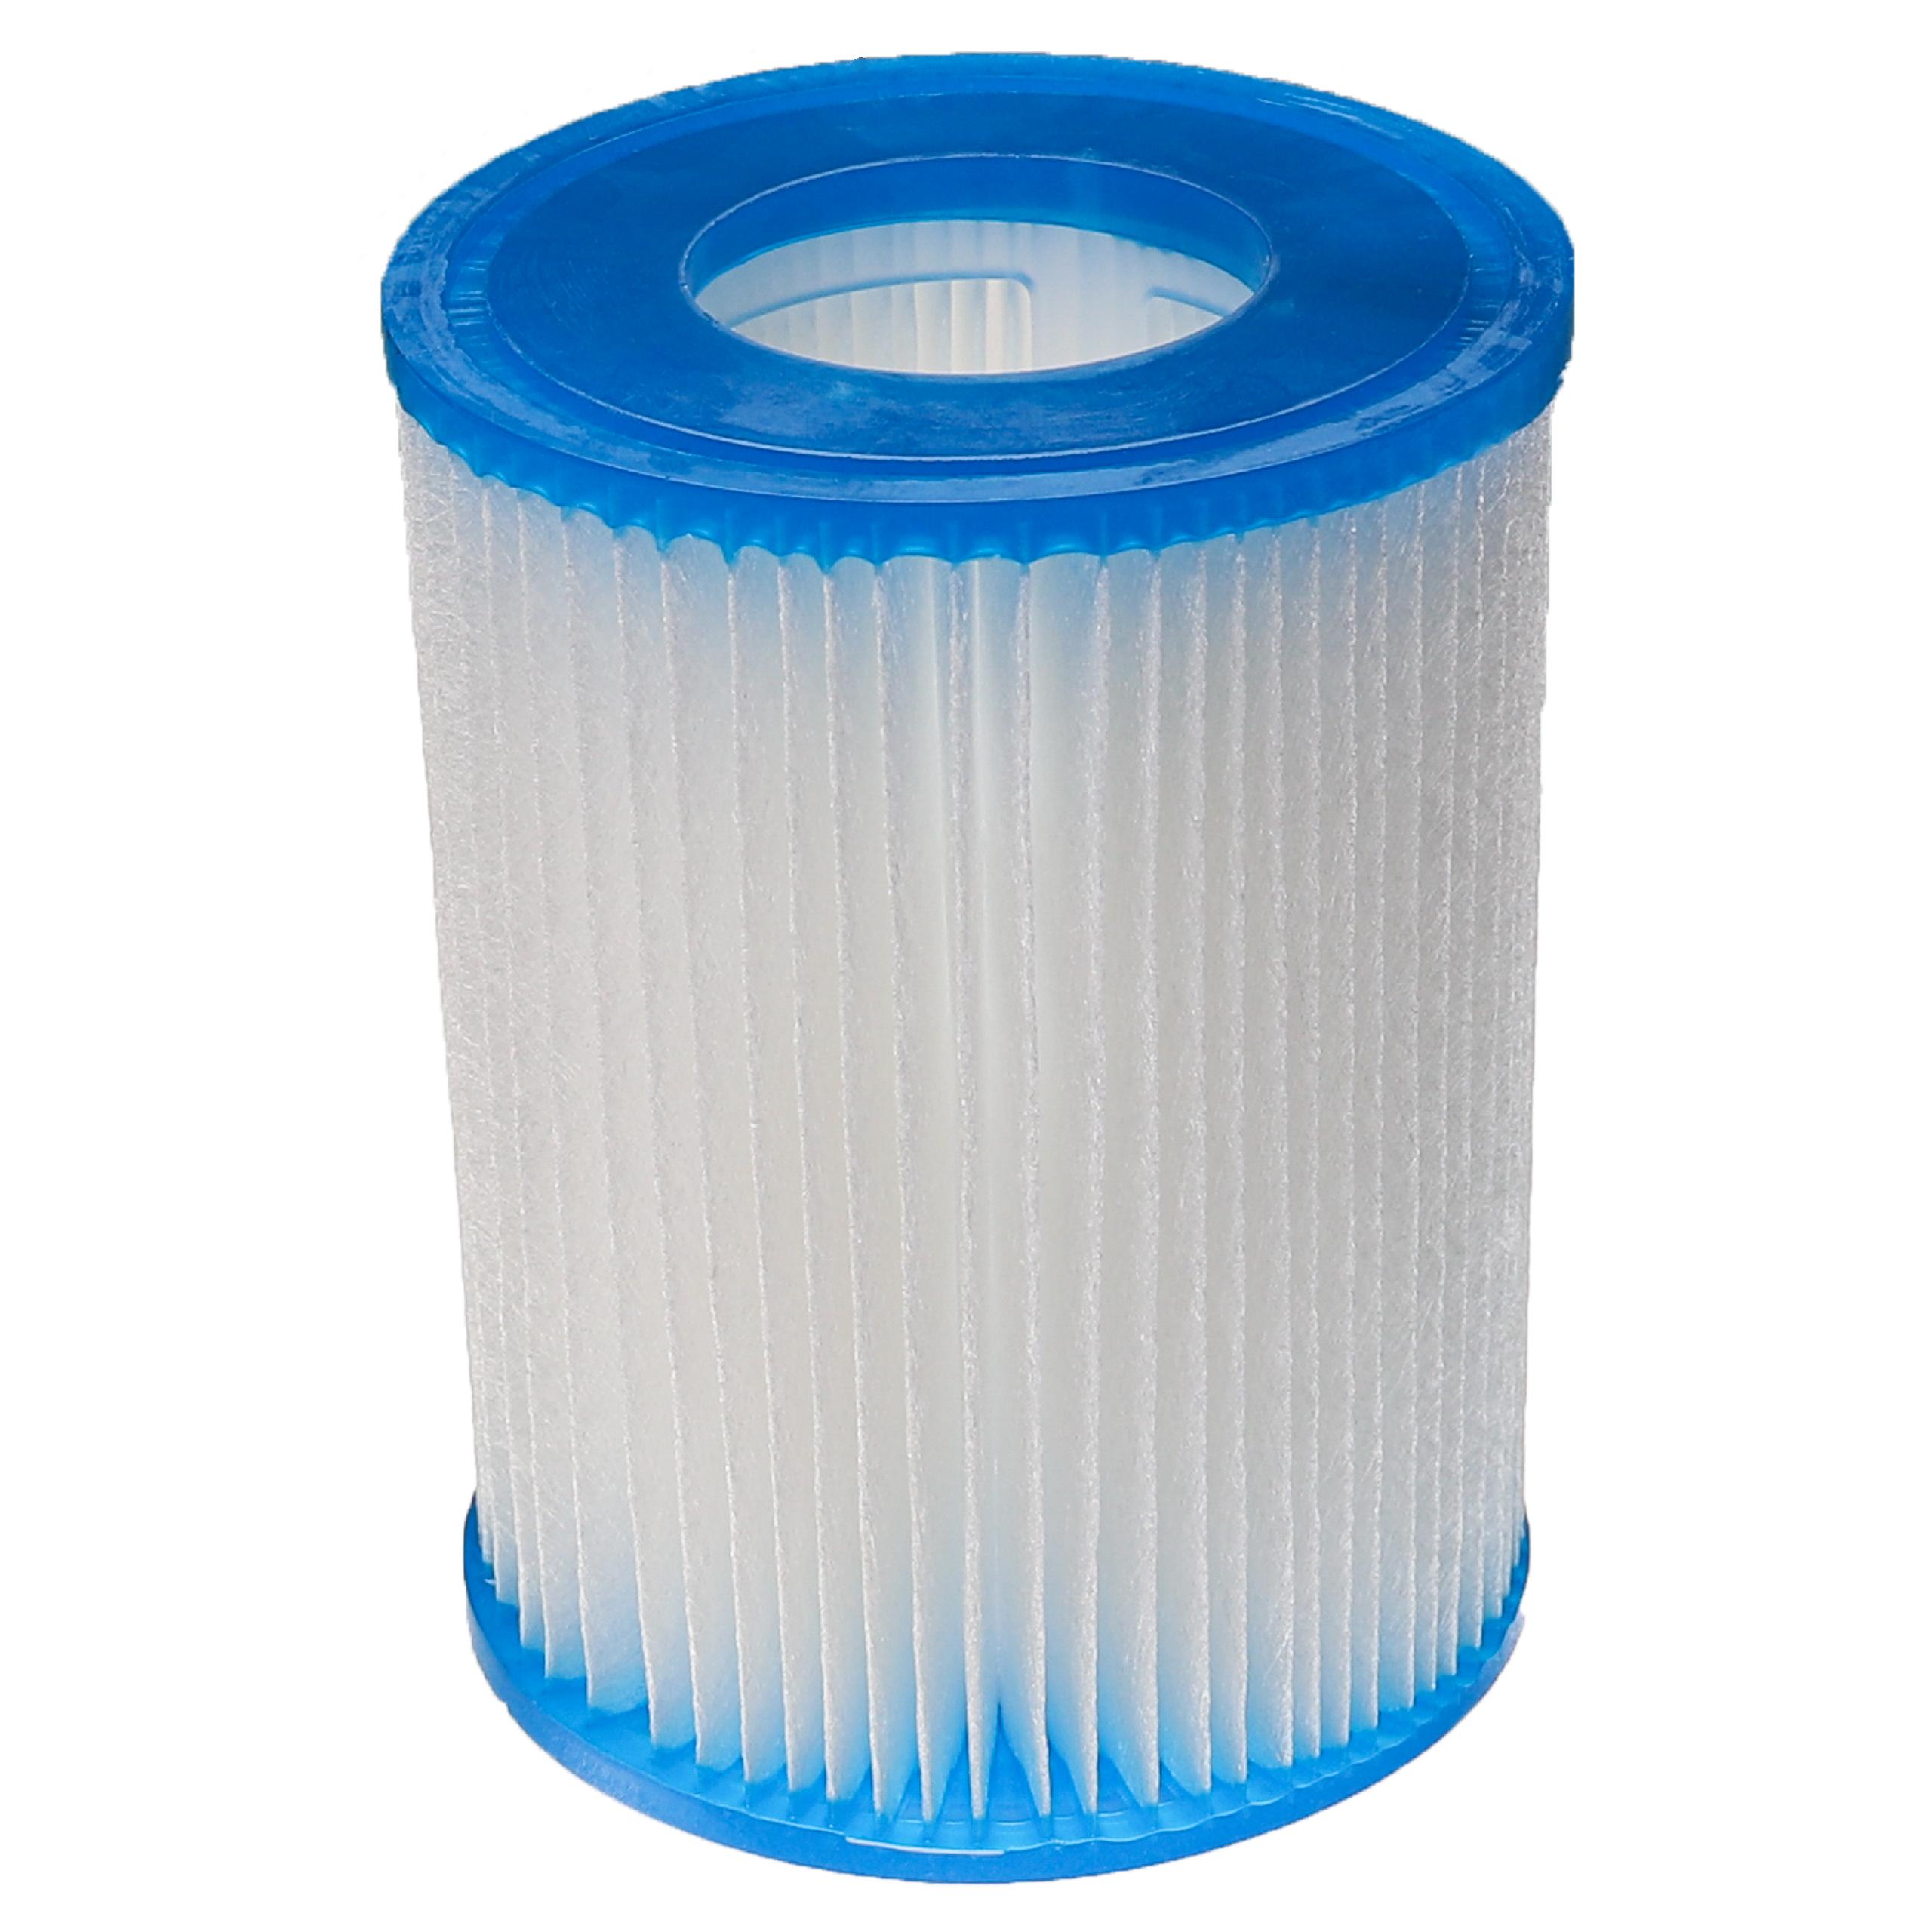 Filtre à eau remplace Bestway FD2137, Typ II pour piscine, pompe de filtration Bestway - Cartouche filtre